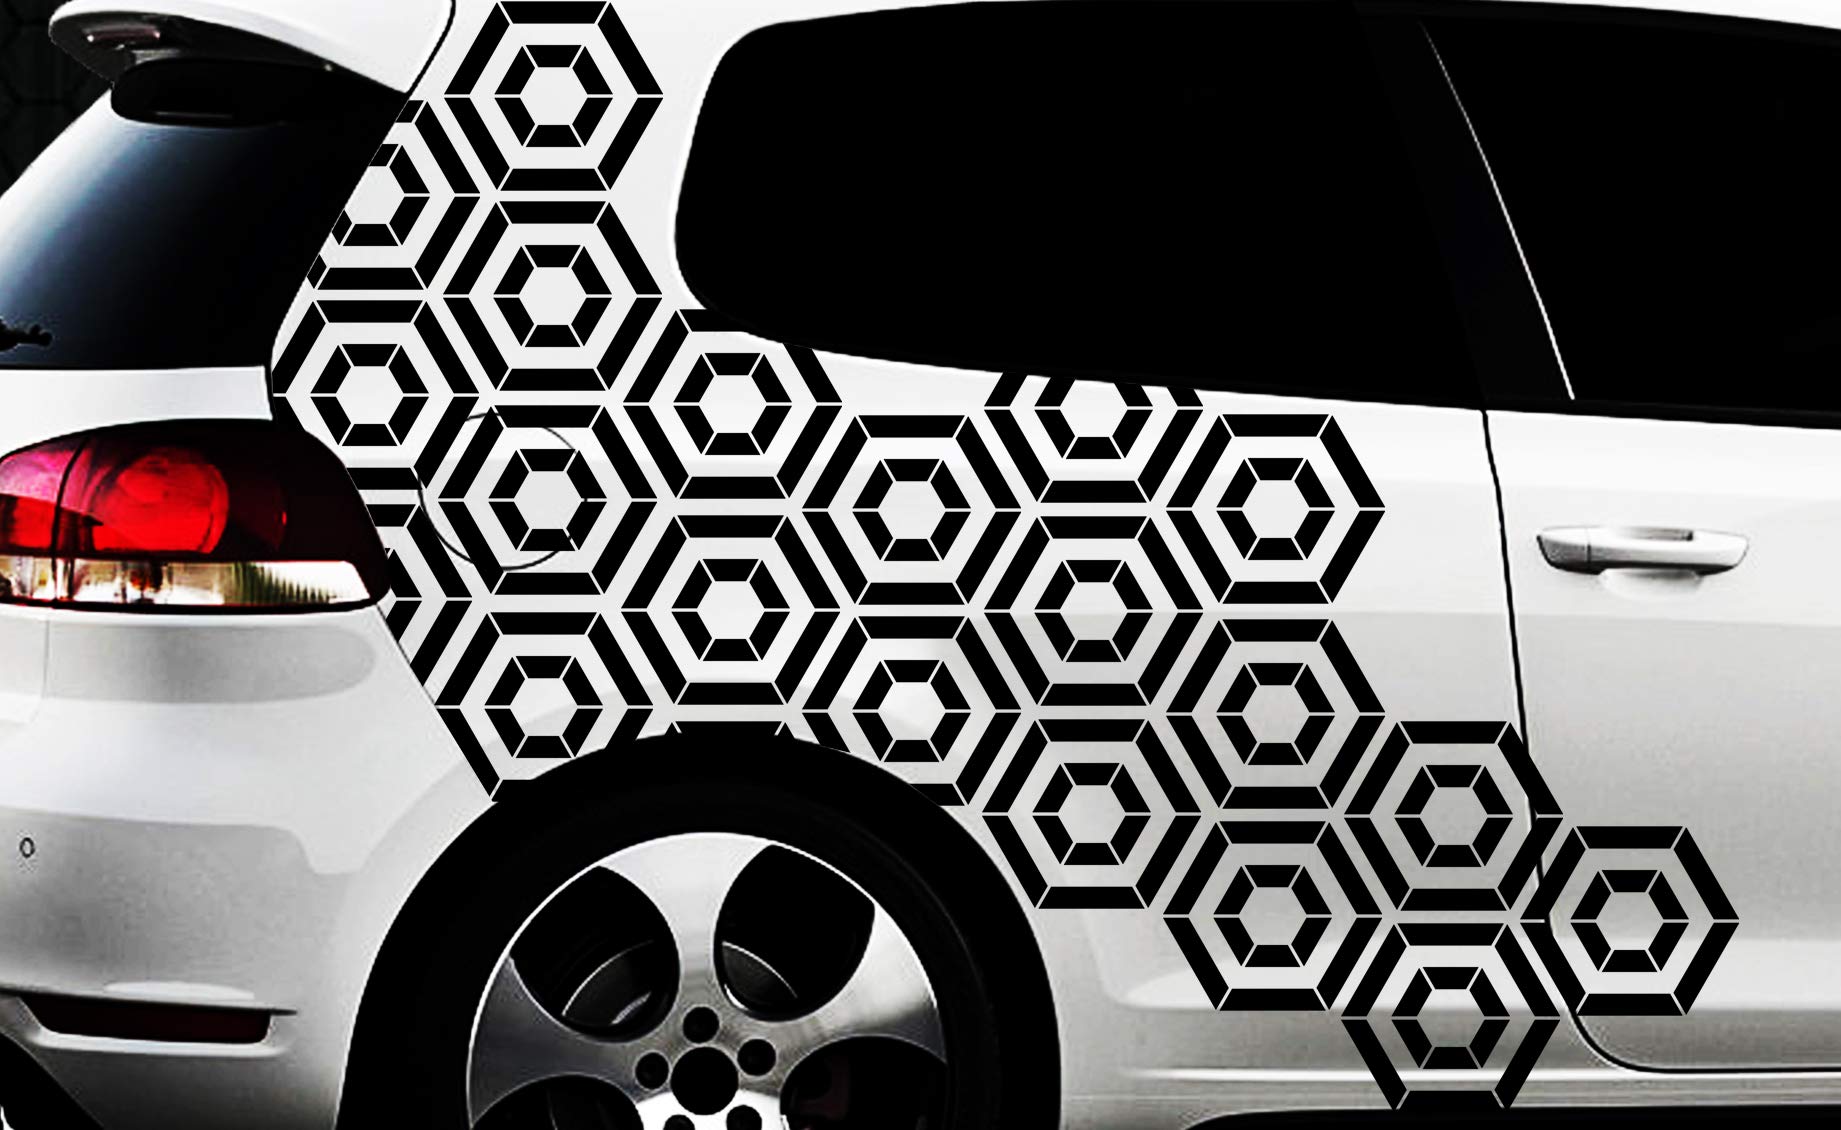 HR-WERBEDESIGN Hexagon Pixel Cyber Camouflage XXL Set Auto Aufkleber Sticker Tuning Wandtattoox m von HR-WERBEDESIGN